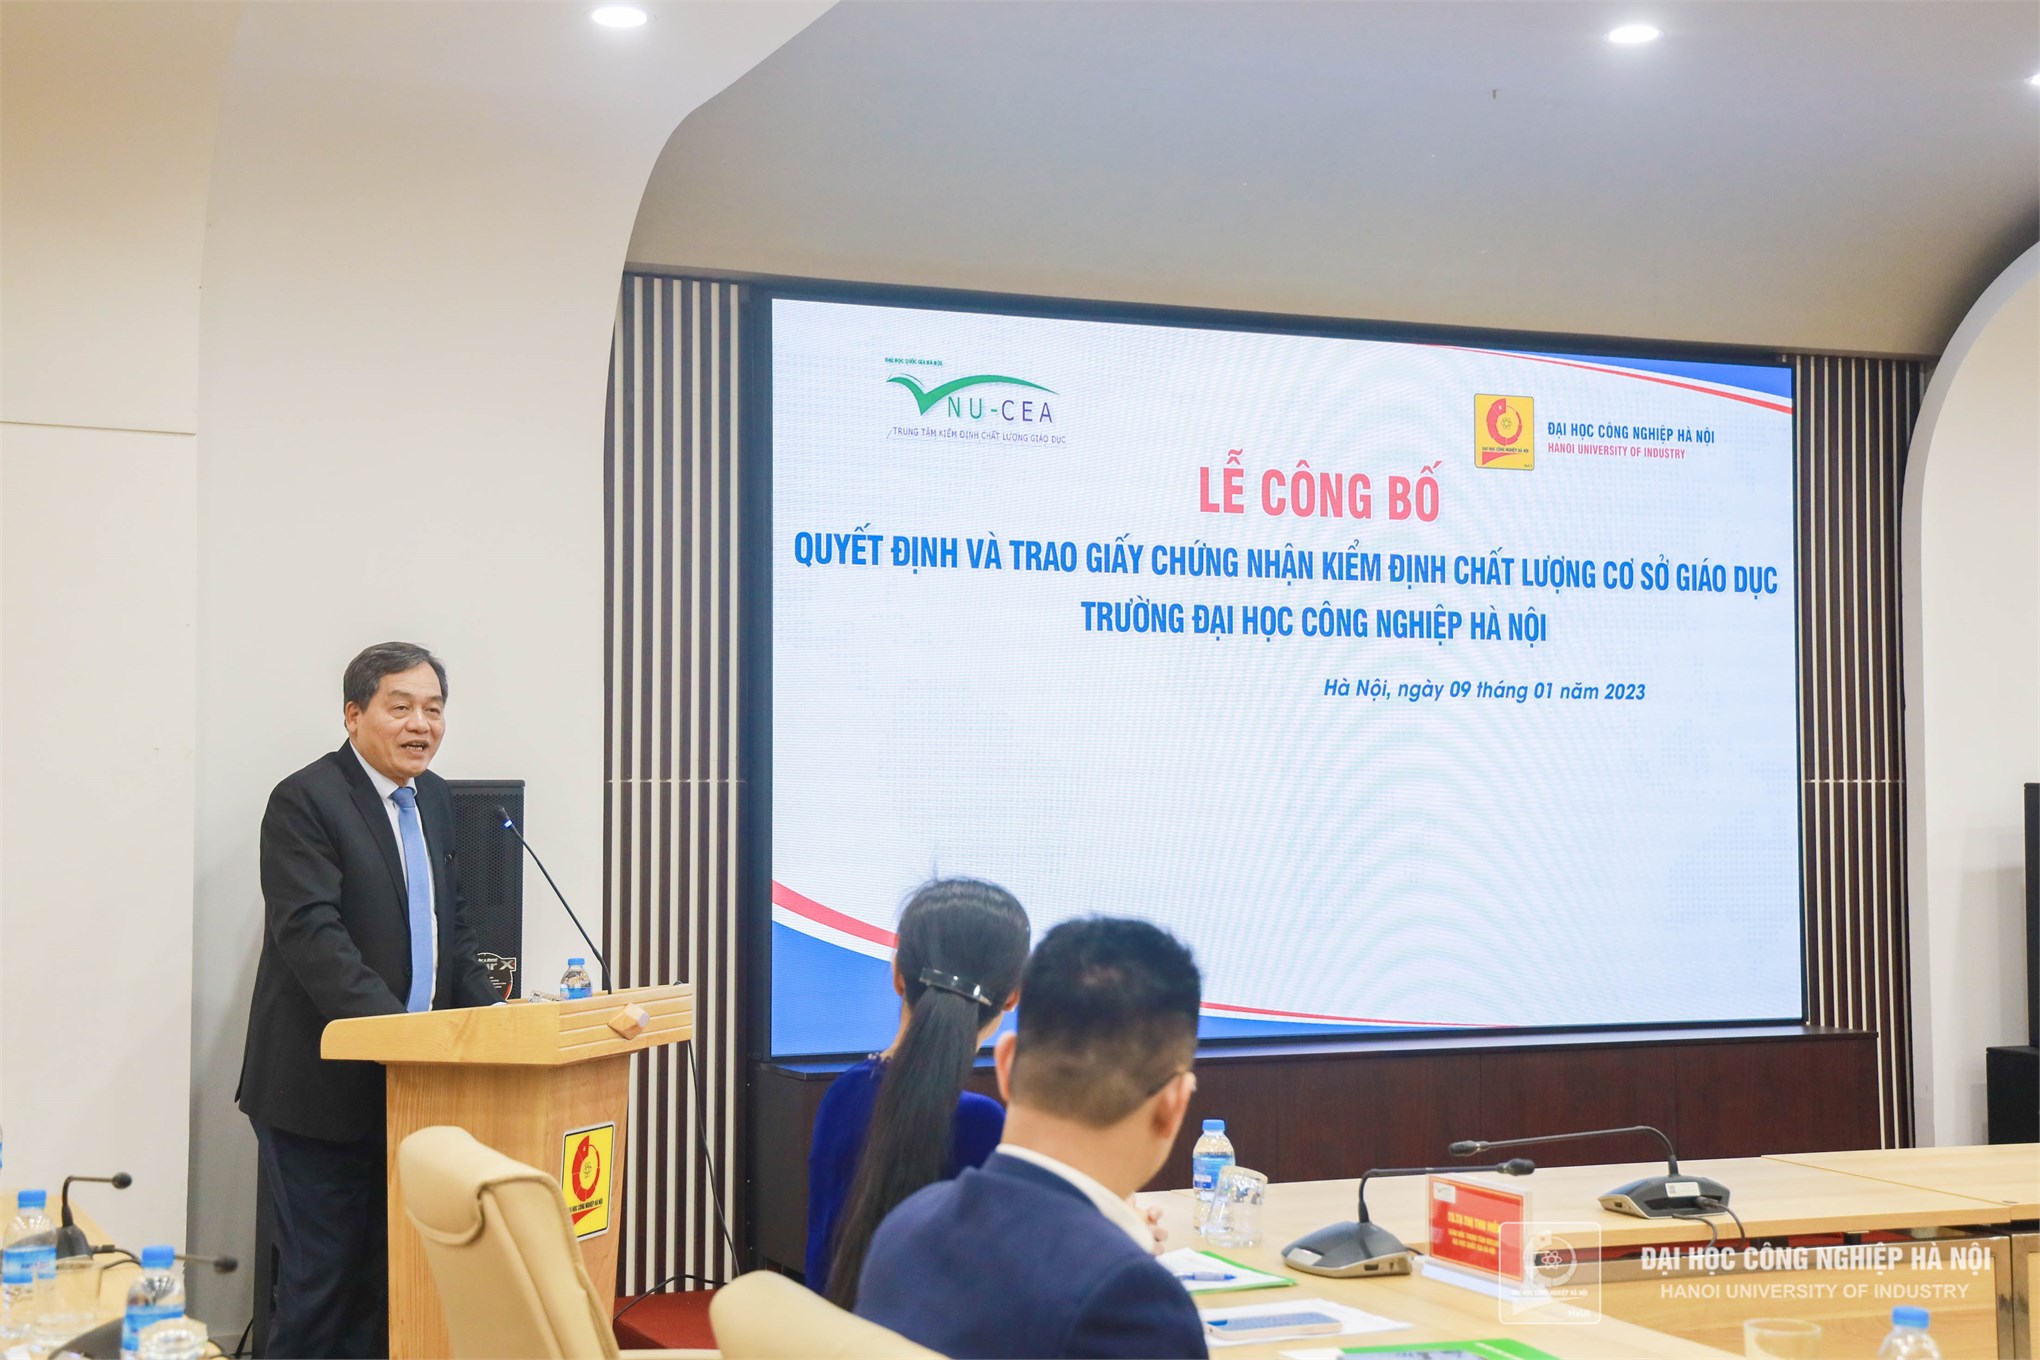 Lễ công bố quyết định và đón nhận chứng nhận kiểm định chất lượng cơ sở giáo dục của Trường Đại học Công nghiệp Hà Nội